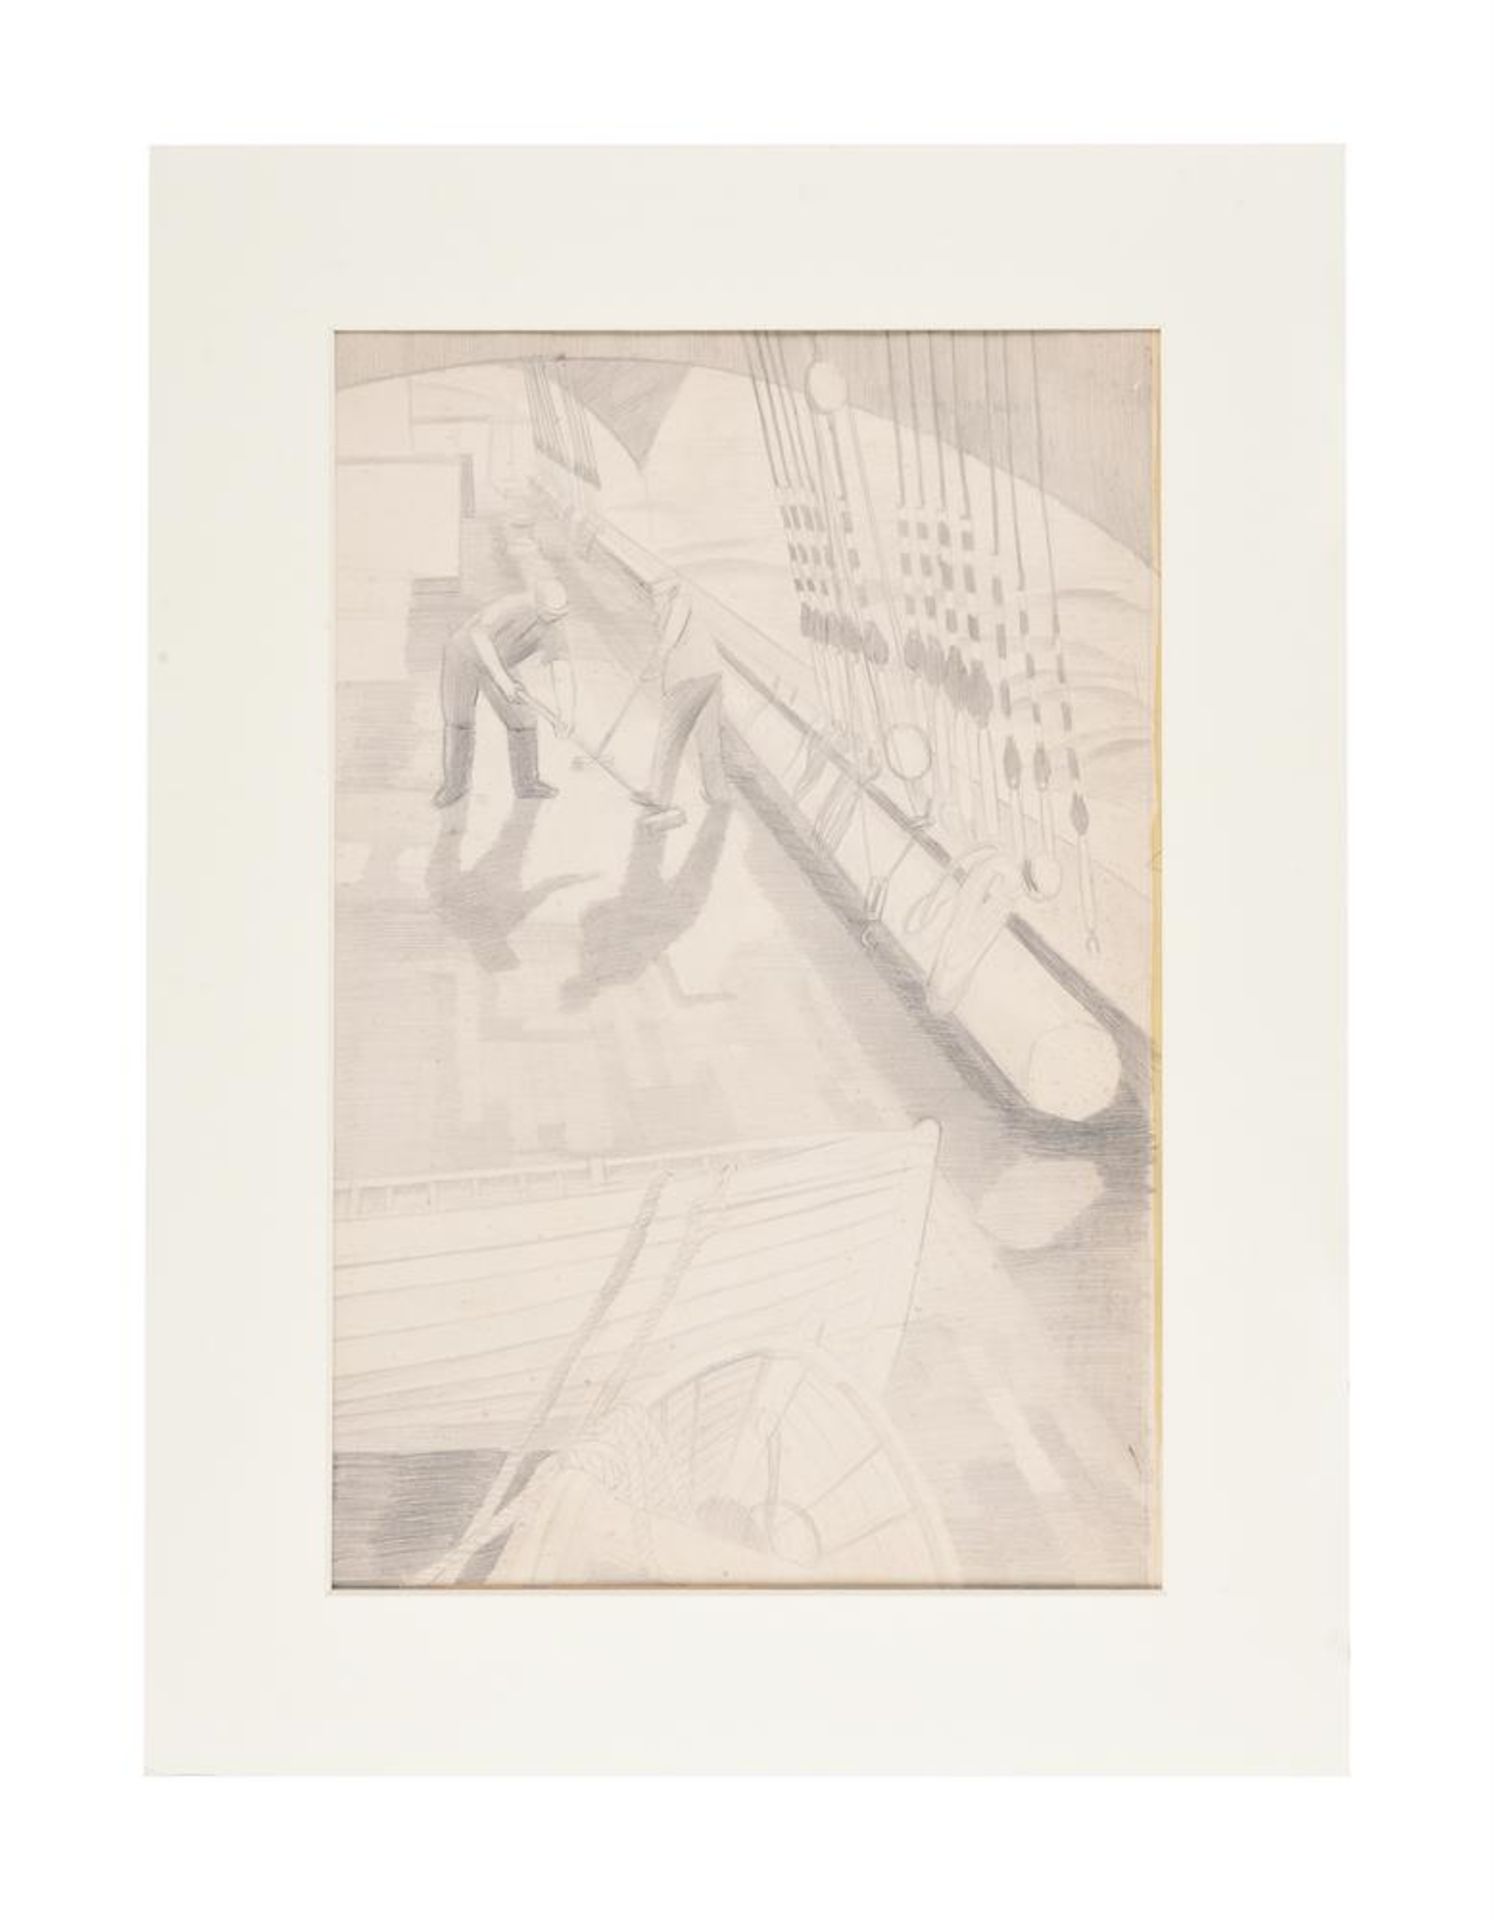 λ RICHARD CARLINE (BRITISH 1896-1980), SCRUBBING THE DECK OF THE GRACE HAWAR, CIRCA 1930